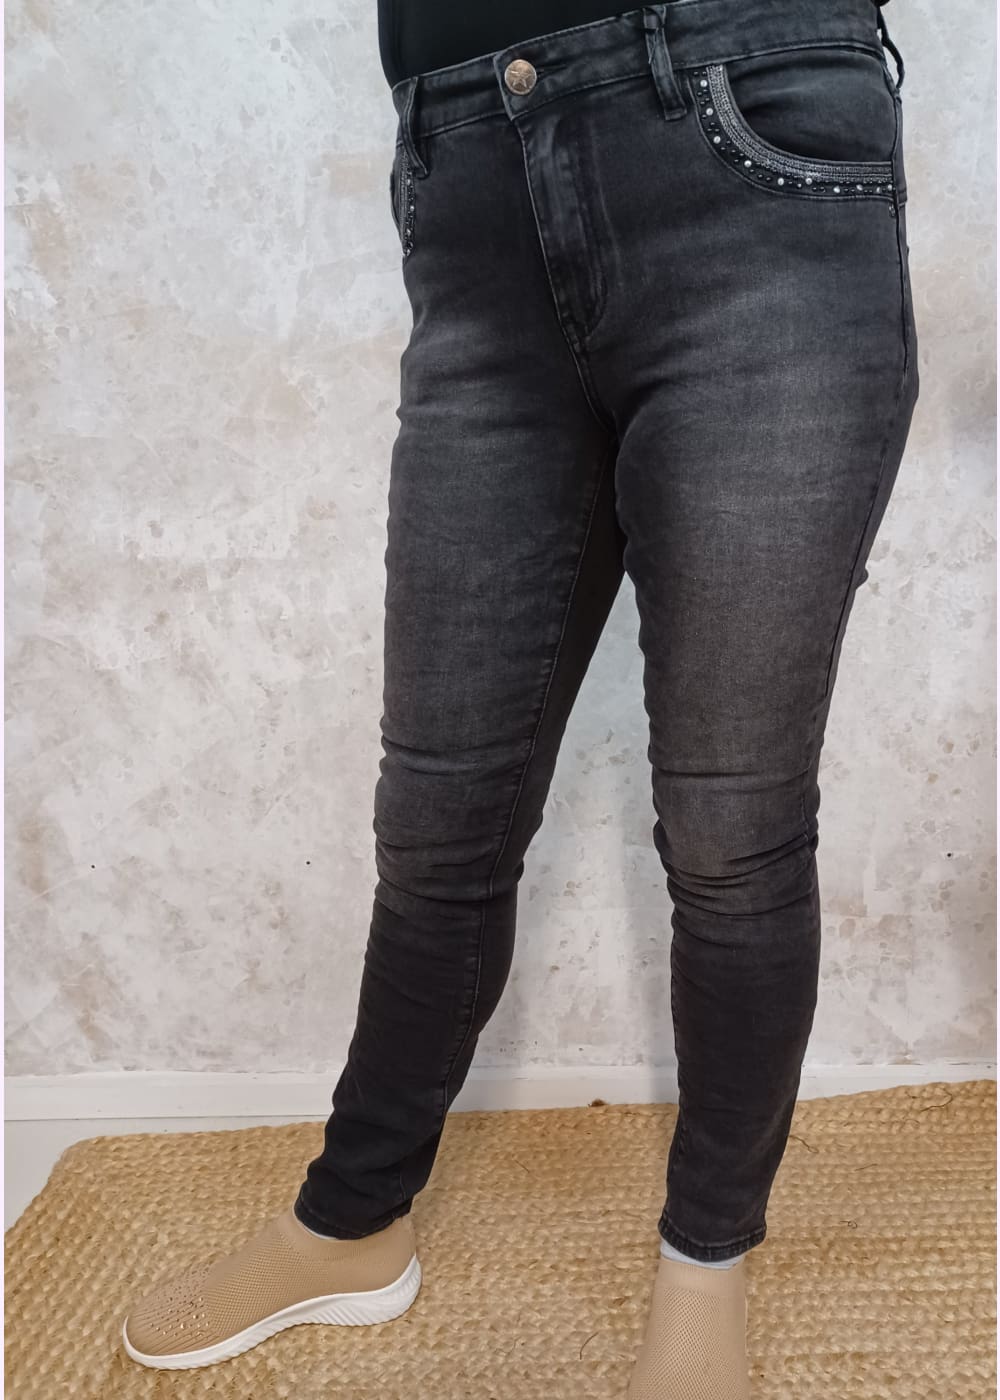 Farkku ash jeans capricollection - farkku